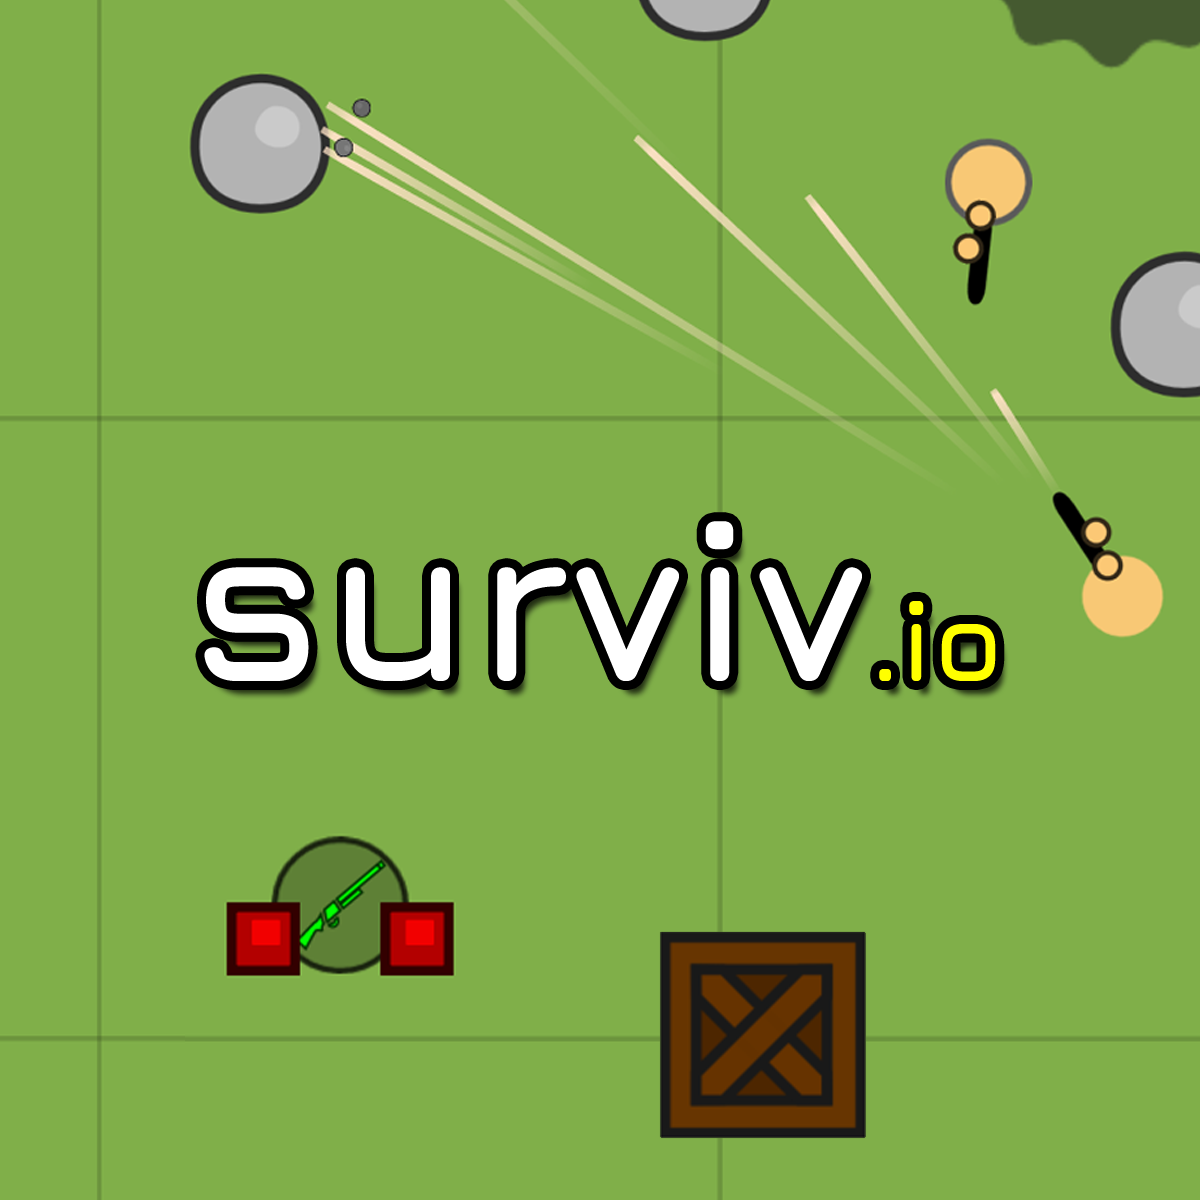 Survive,Io